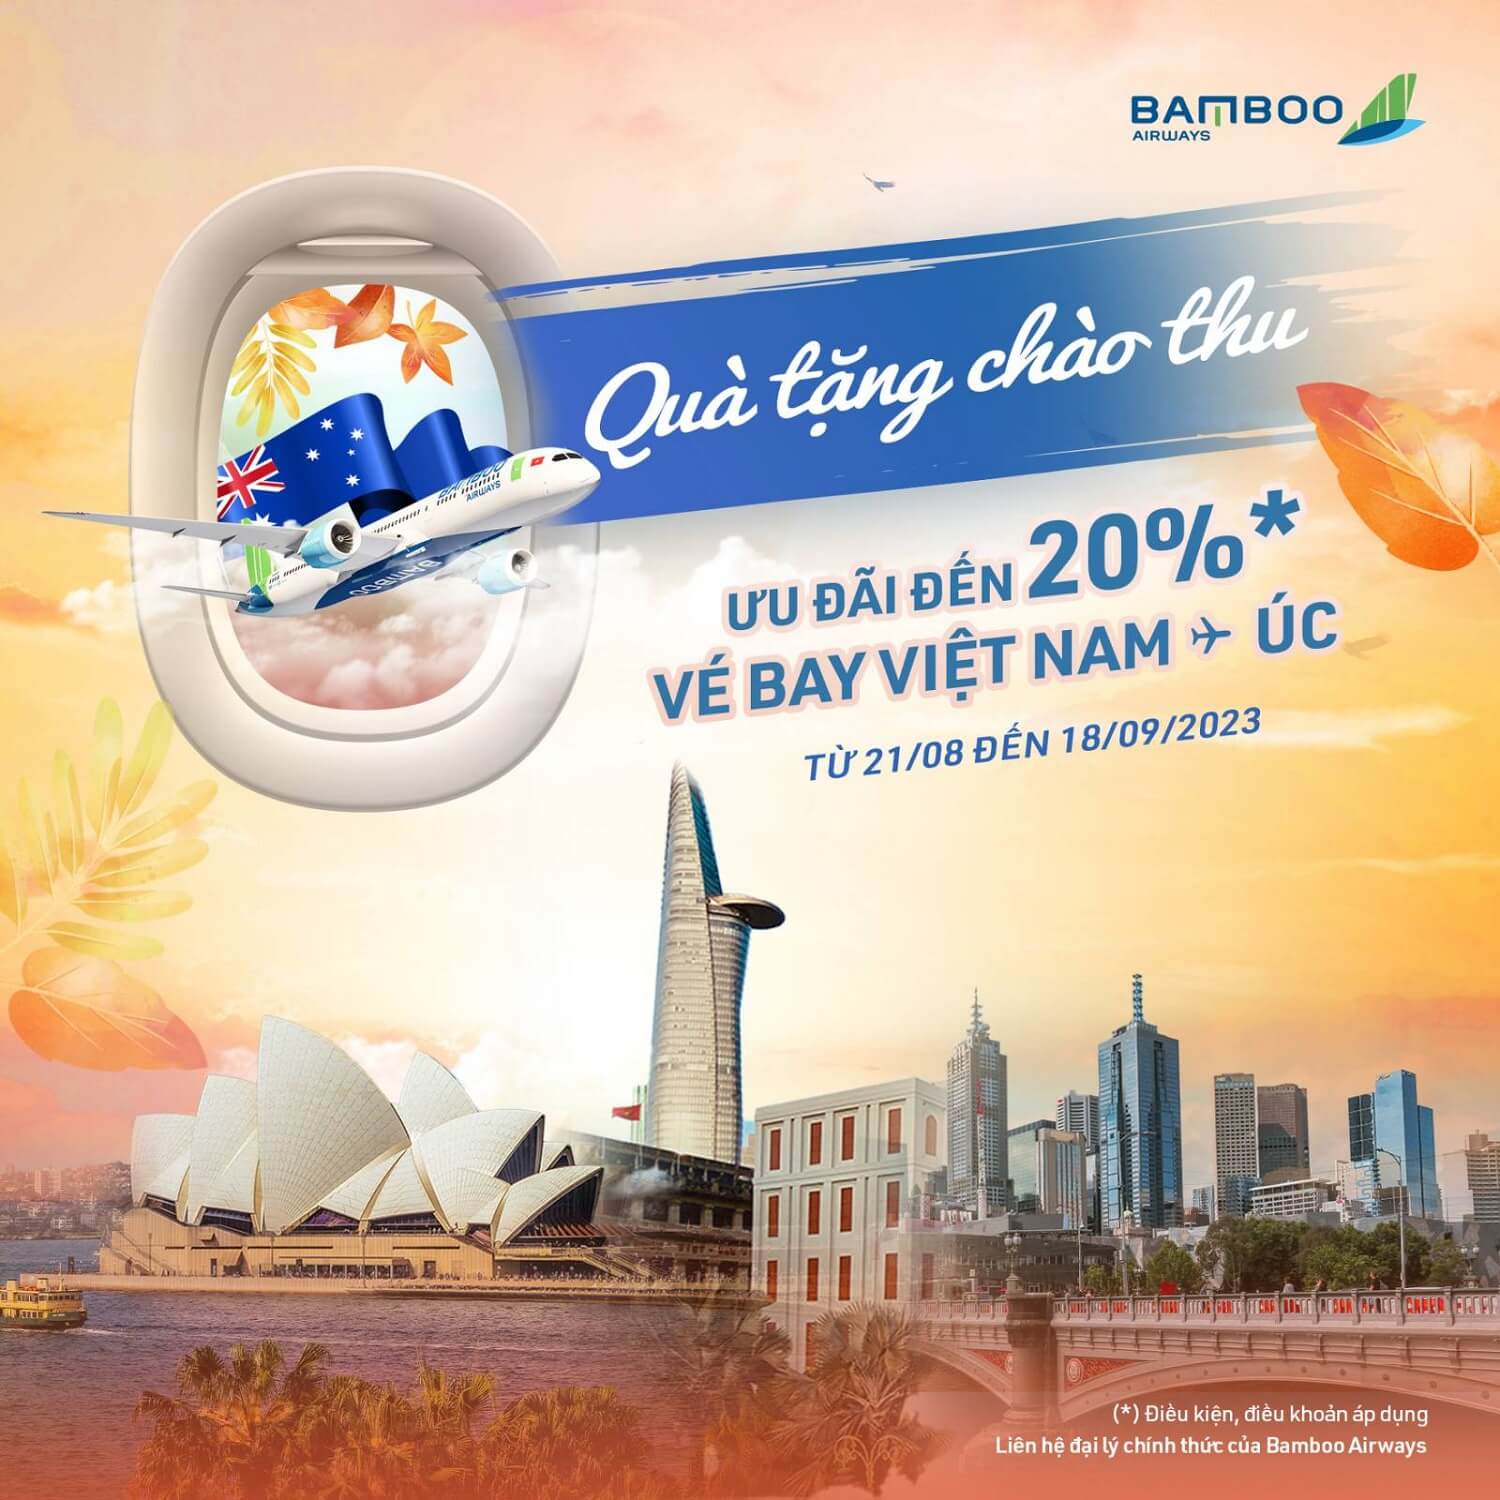 Bamboo Airways ưu đãi đường bay Việt Nam - Úc